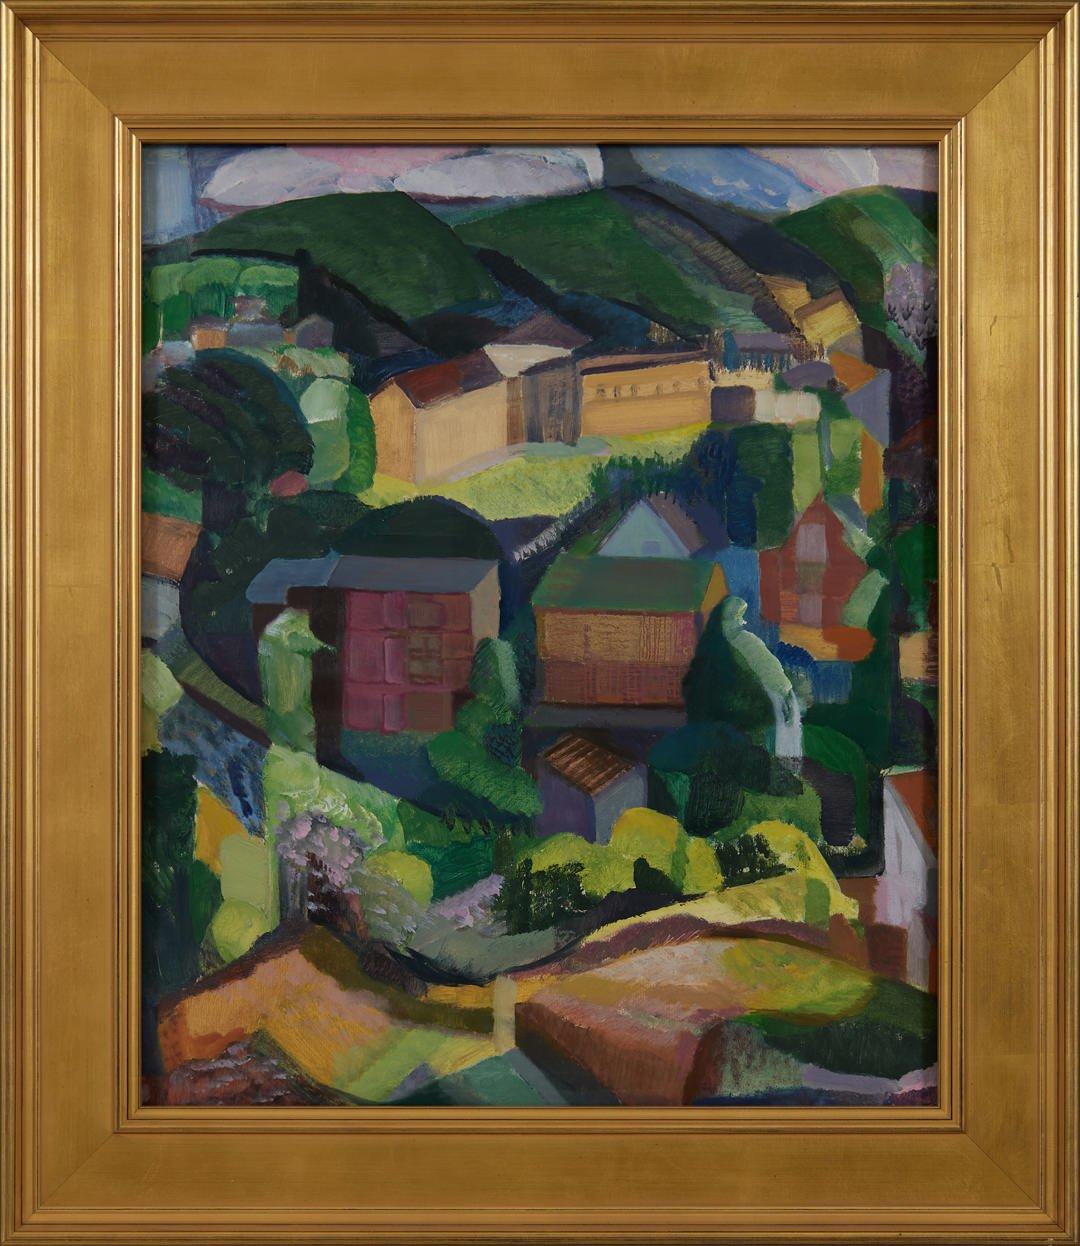 Gloucester Houses & Backyards, farbenfrohe kubistische Landschaft, weibliche Künstlerin, um 1935 – Painting von Clara Deike